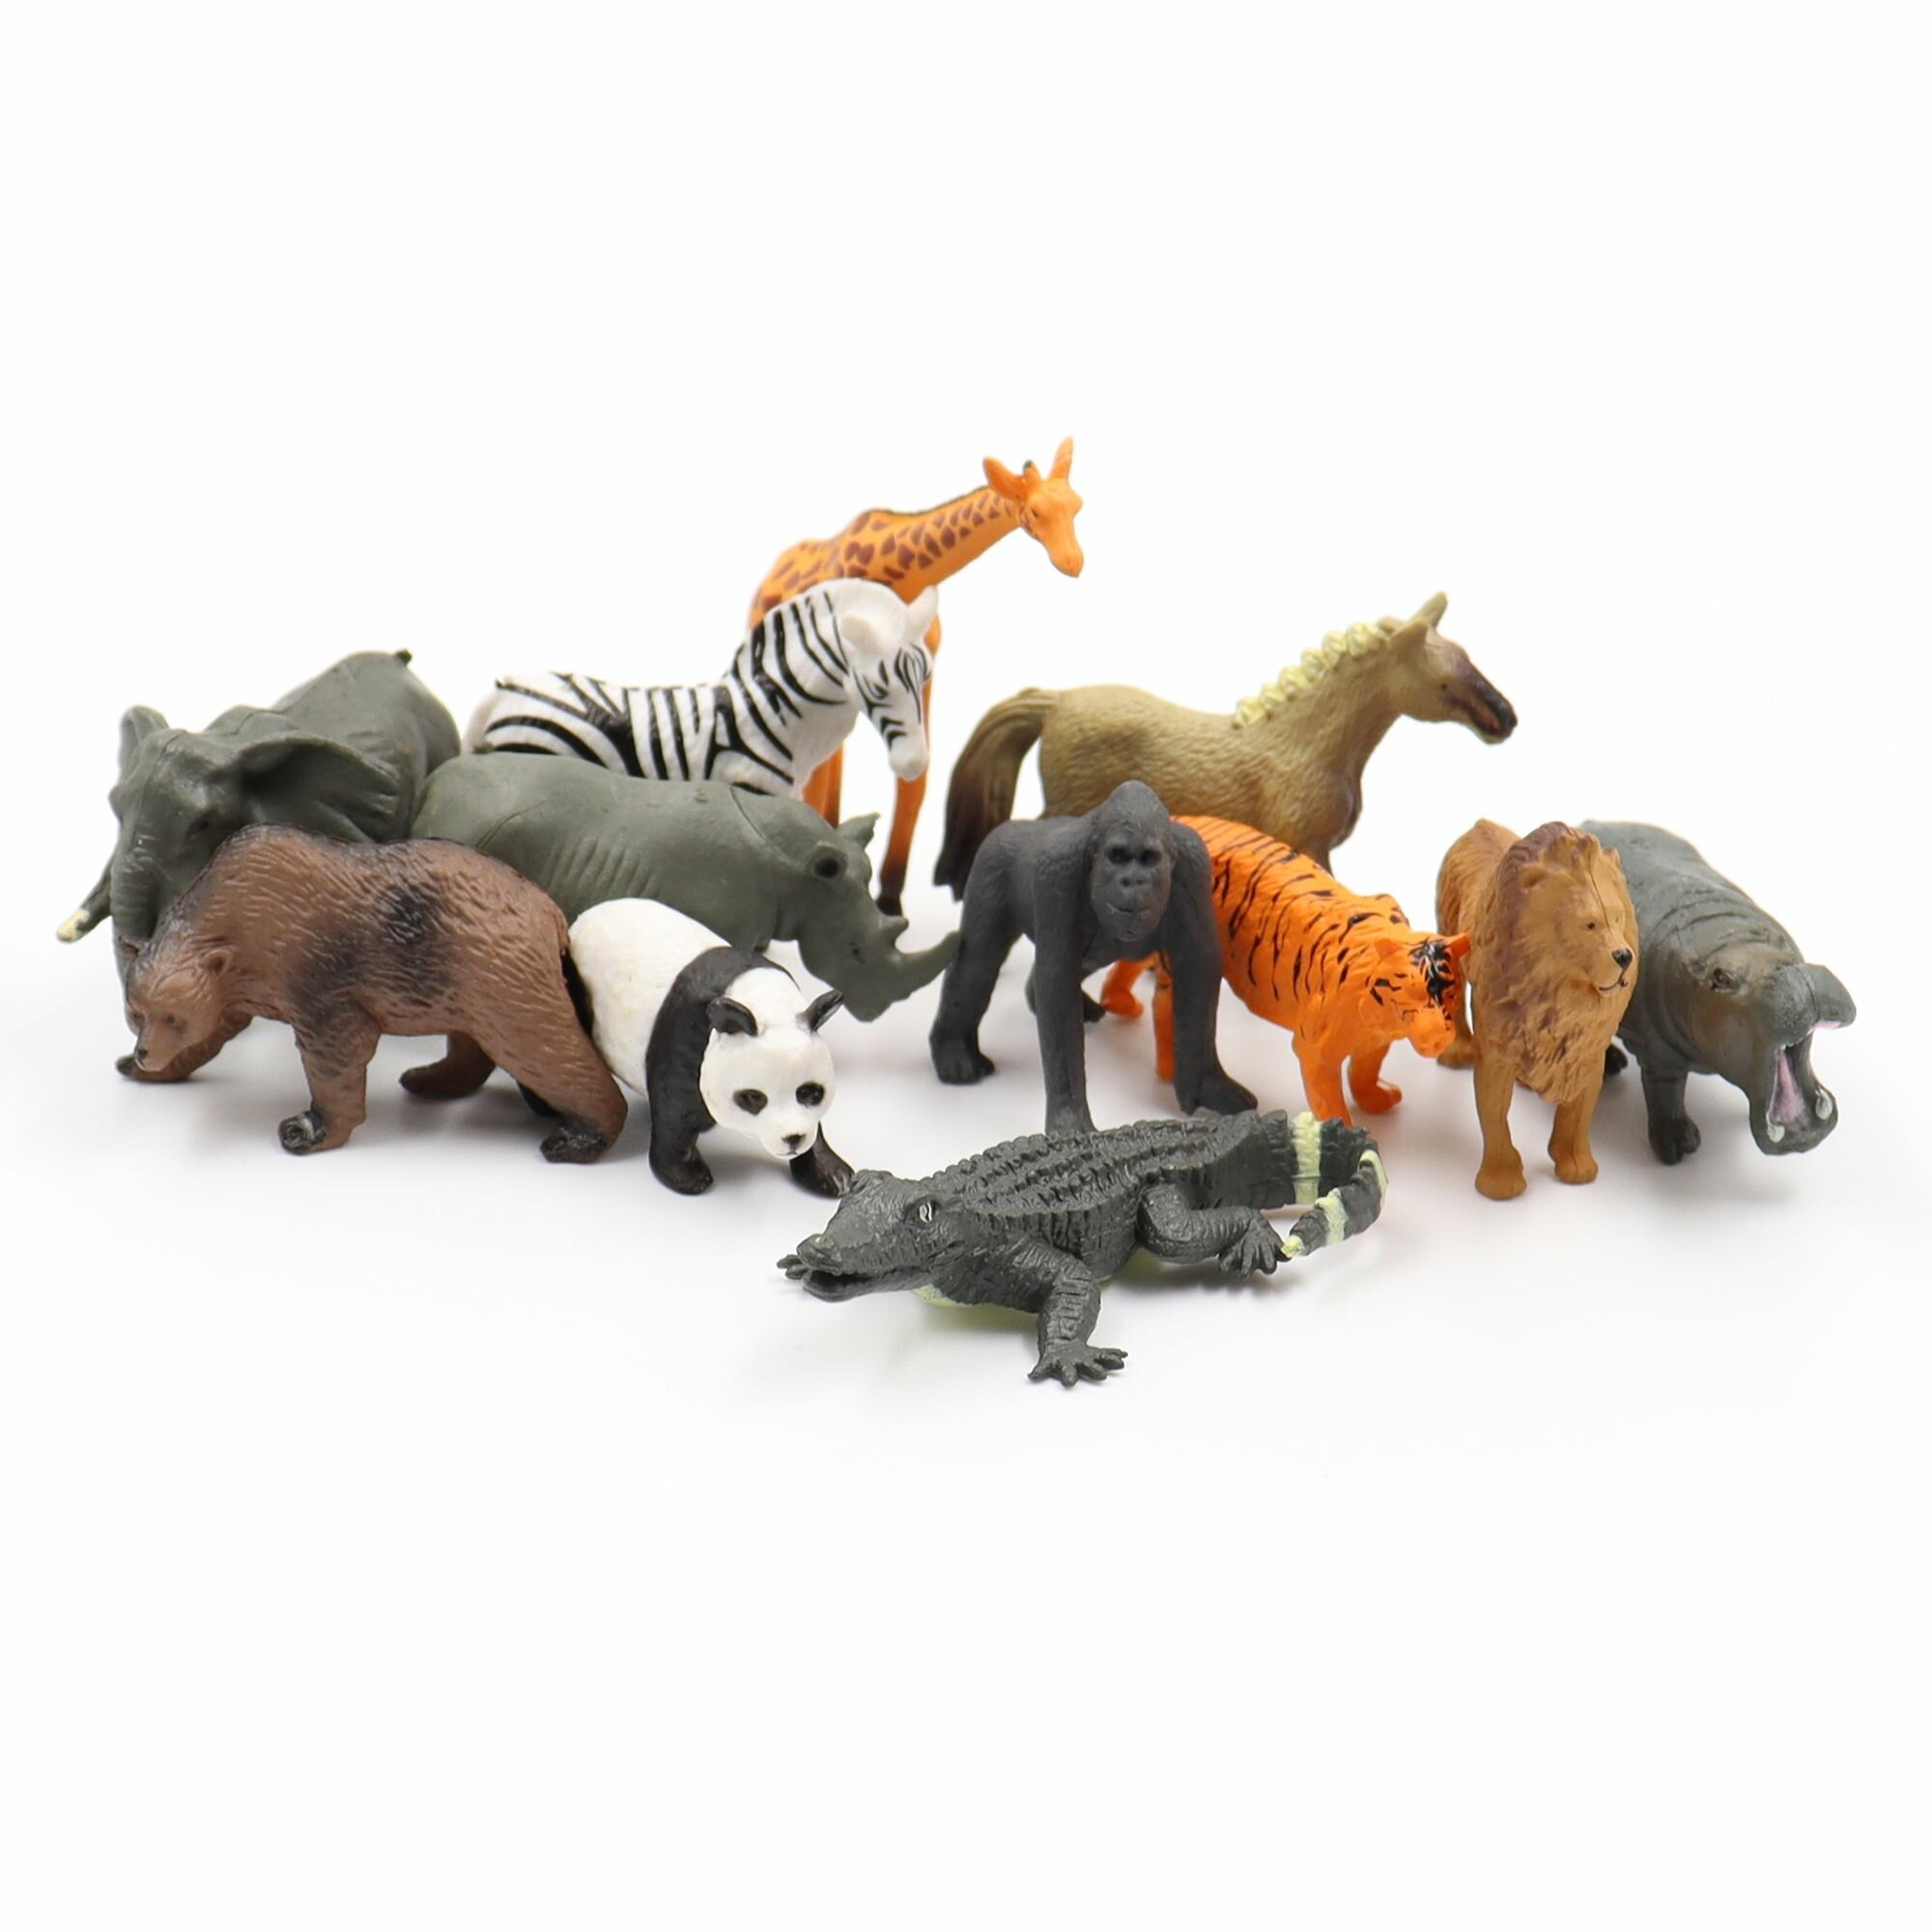 Фигурки диких животных, детский игровой набор Zateyo мини Сафари, игрушка для детей коллекционная, декоративная, 12 шт.